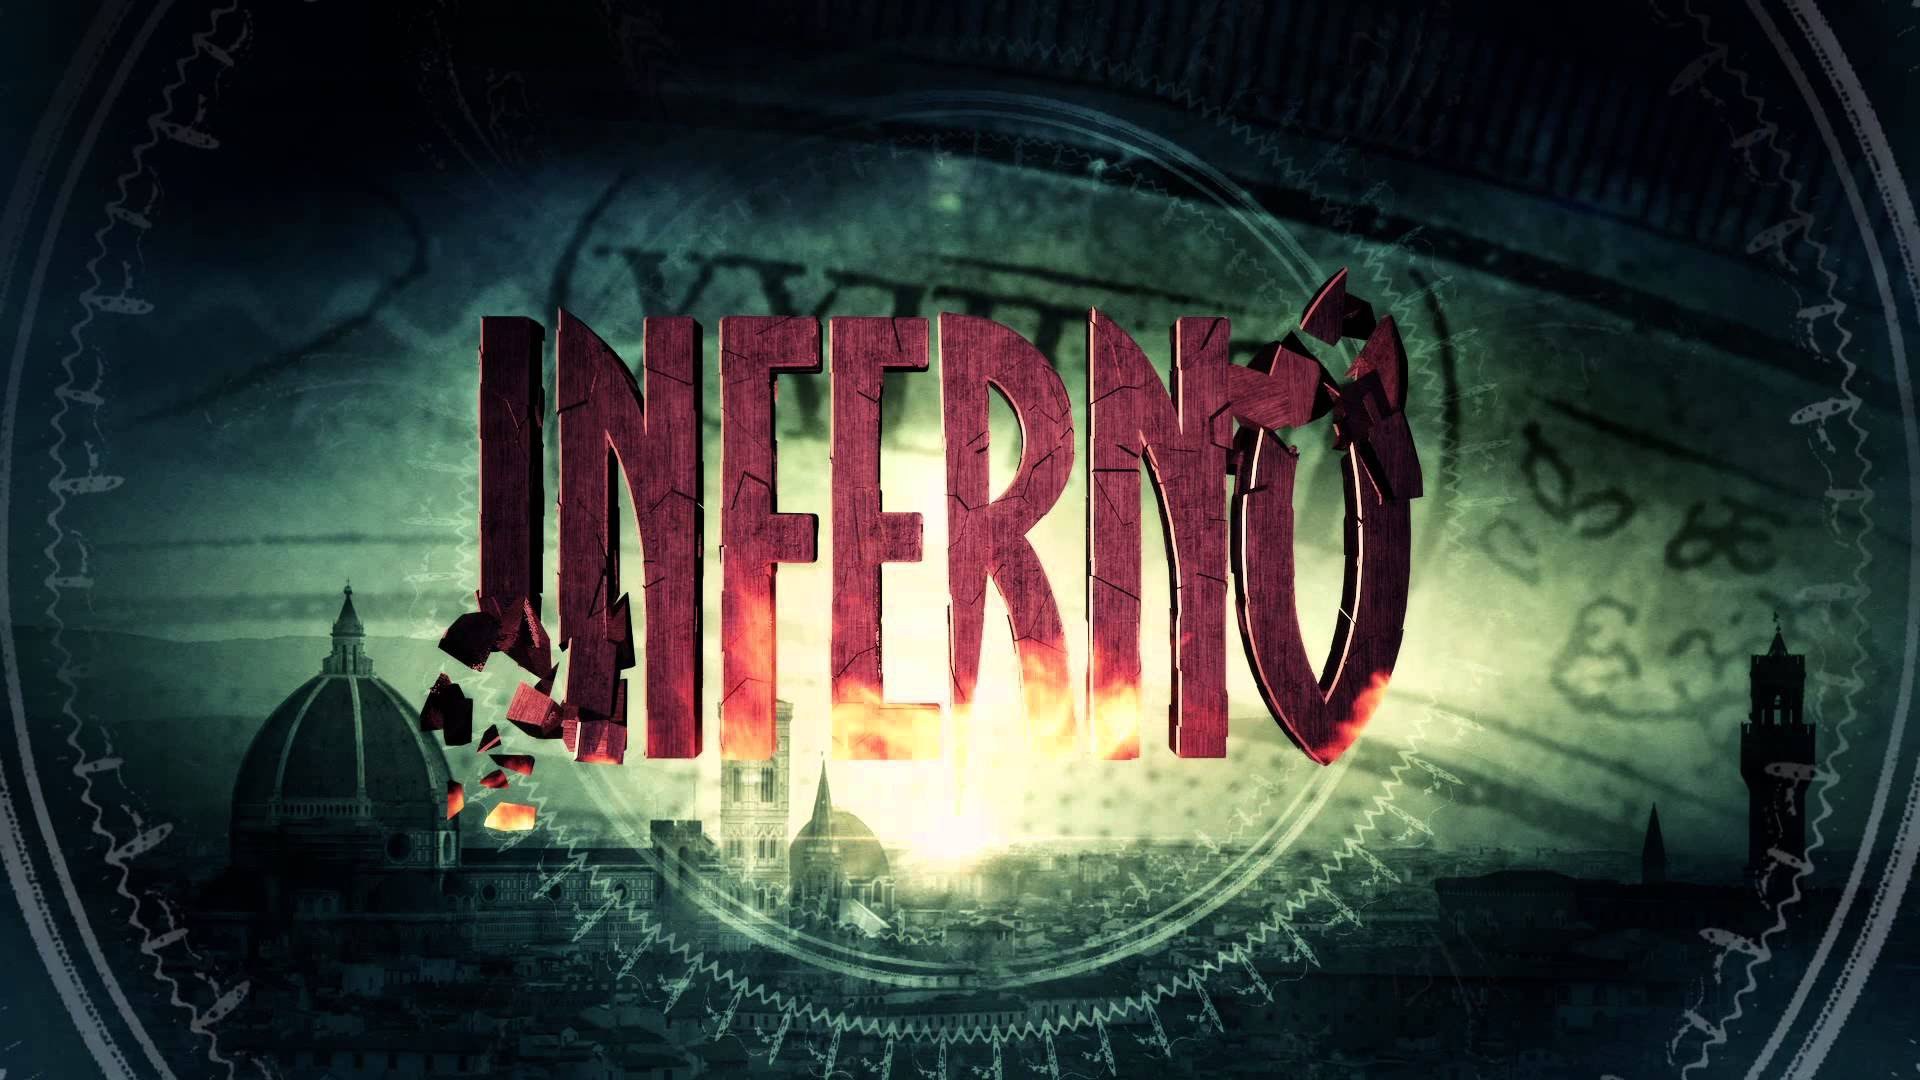 Full Hd Movie Online 2016 Watch Inferno Online